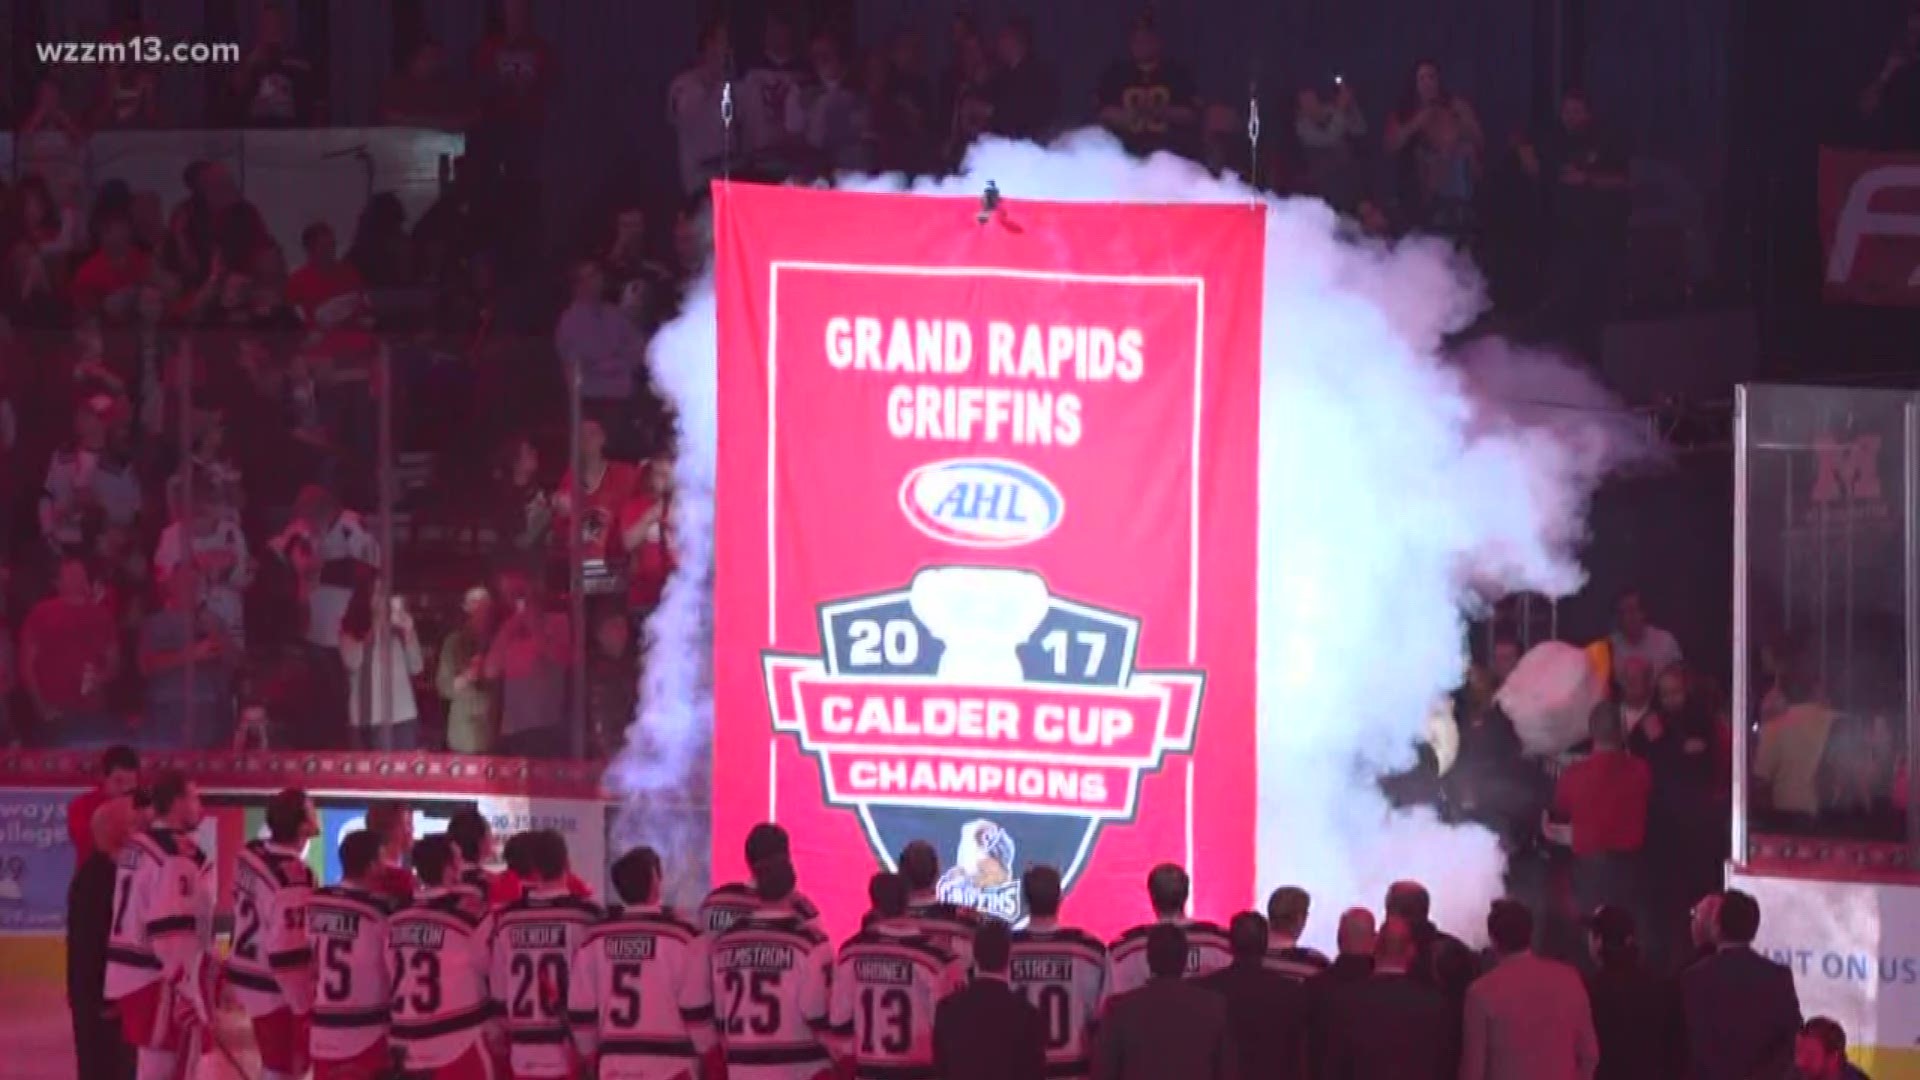 Griffins raise the Calder Cup Championship banner